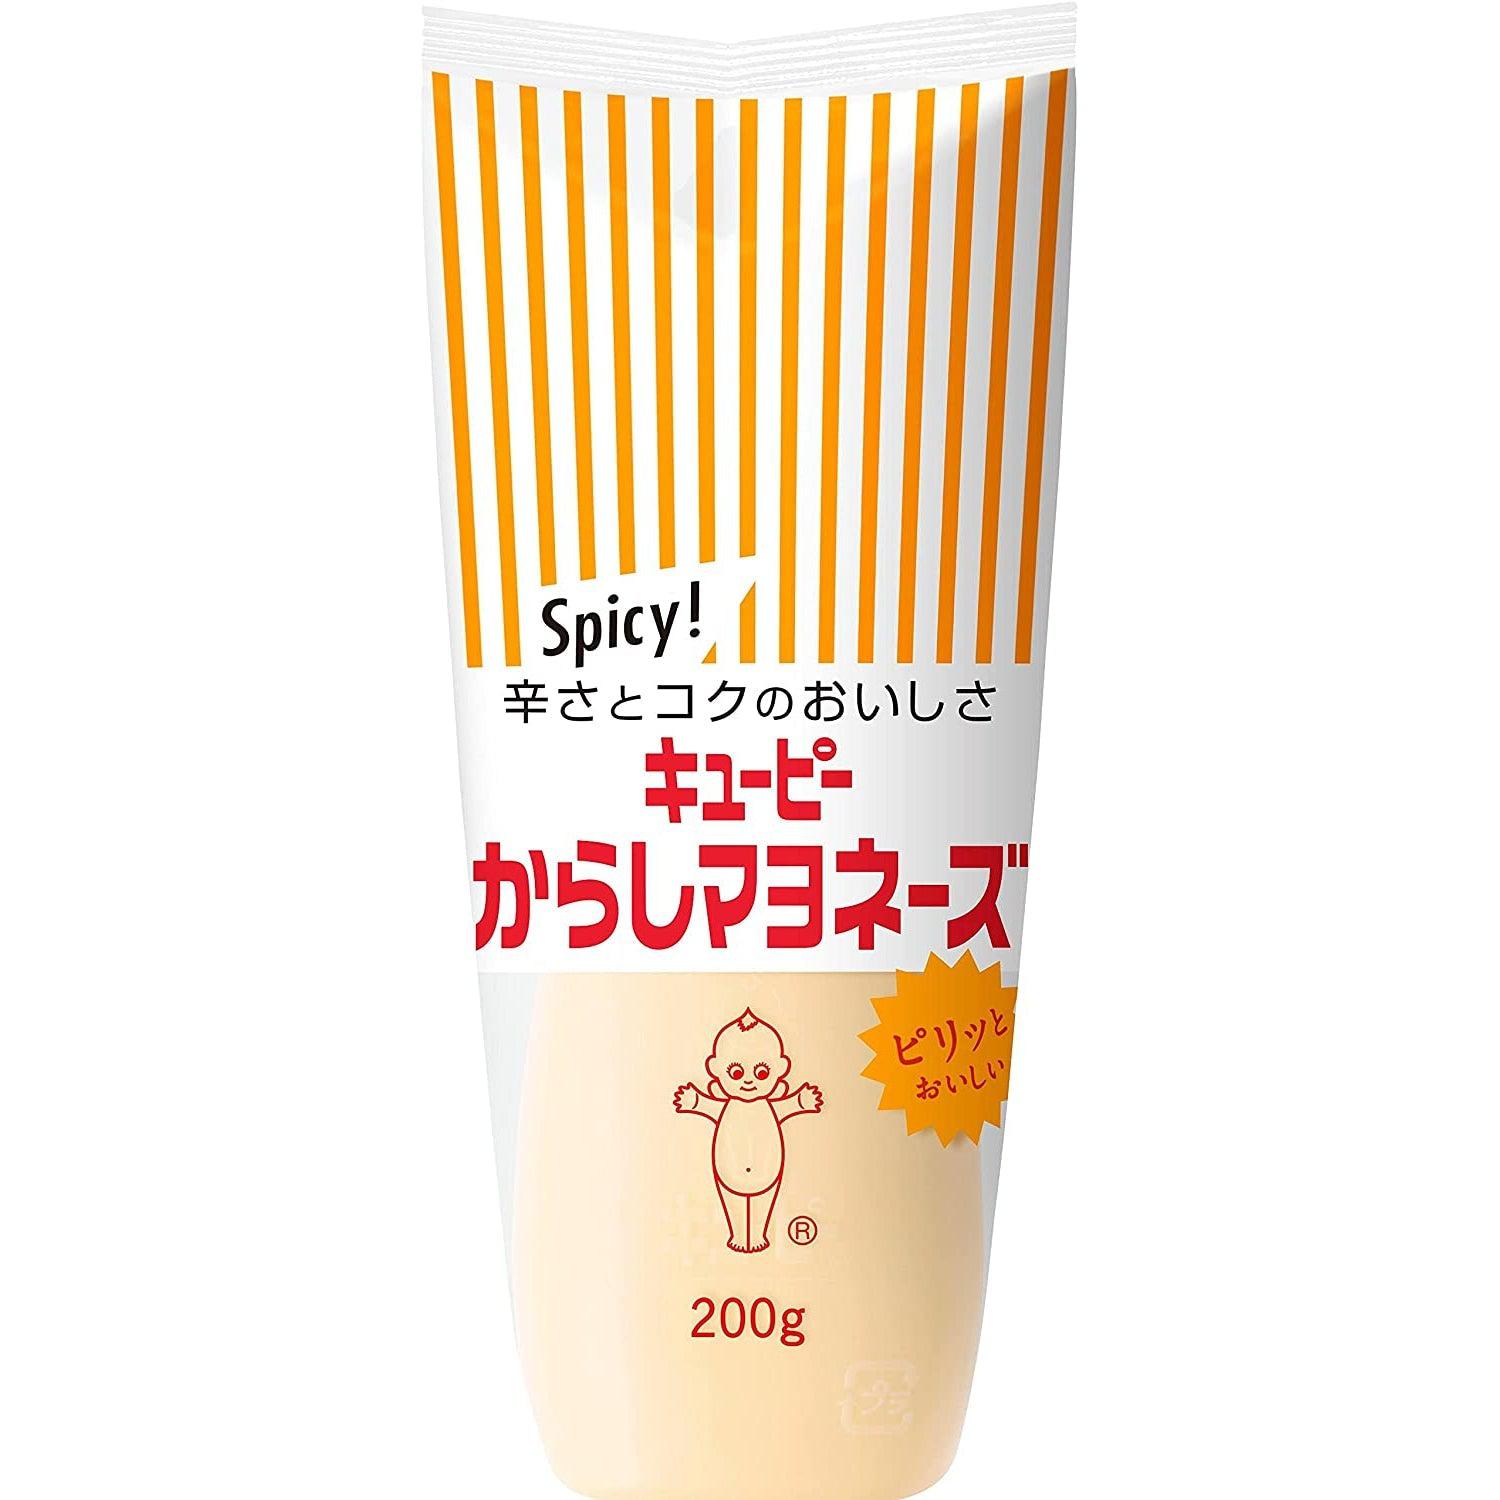 Kewpie Karashi Mayonnaise Japanese Spicy Mayo 200g